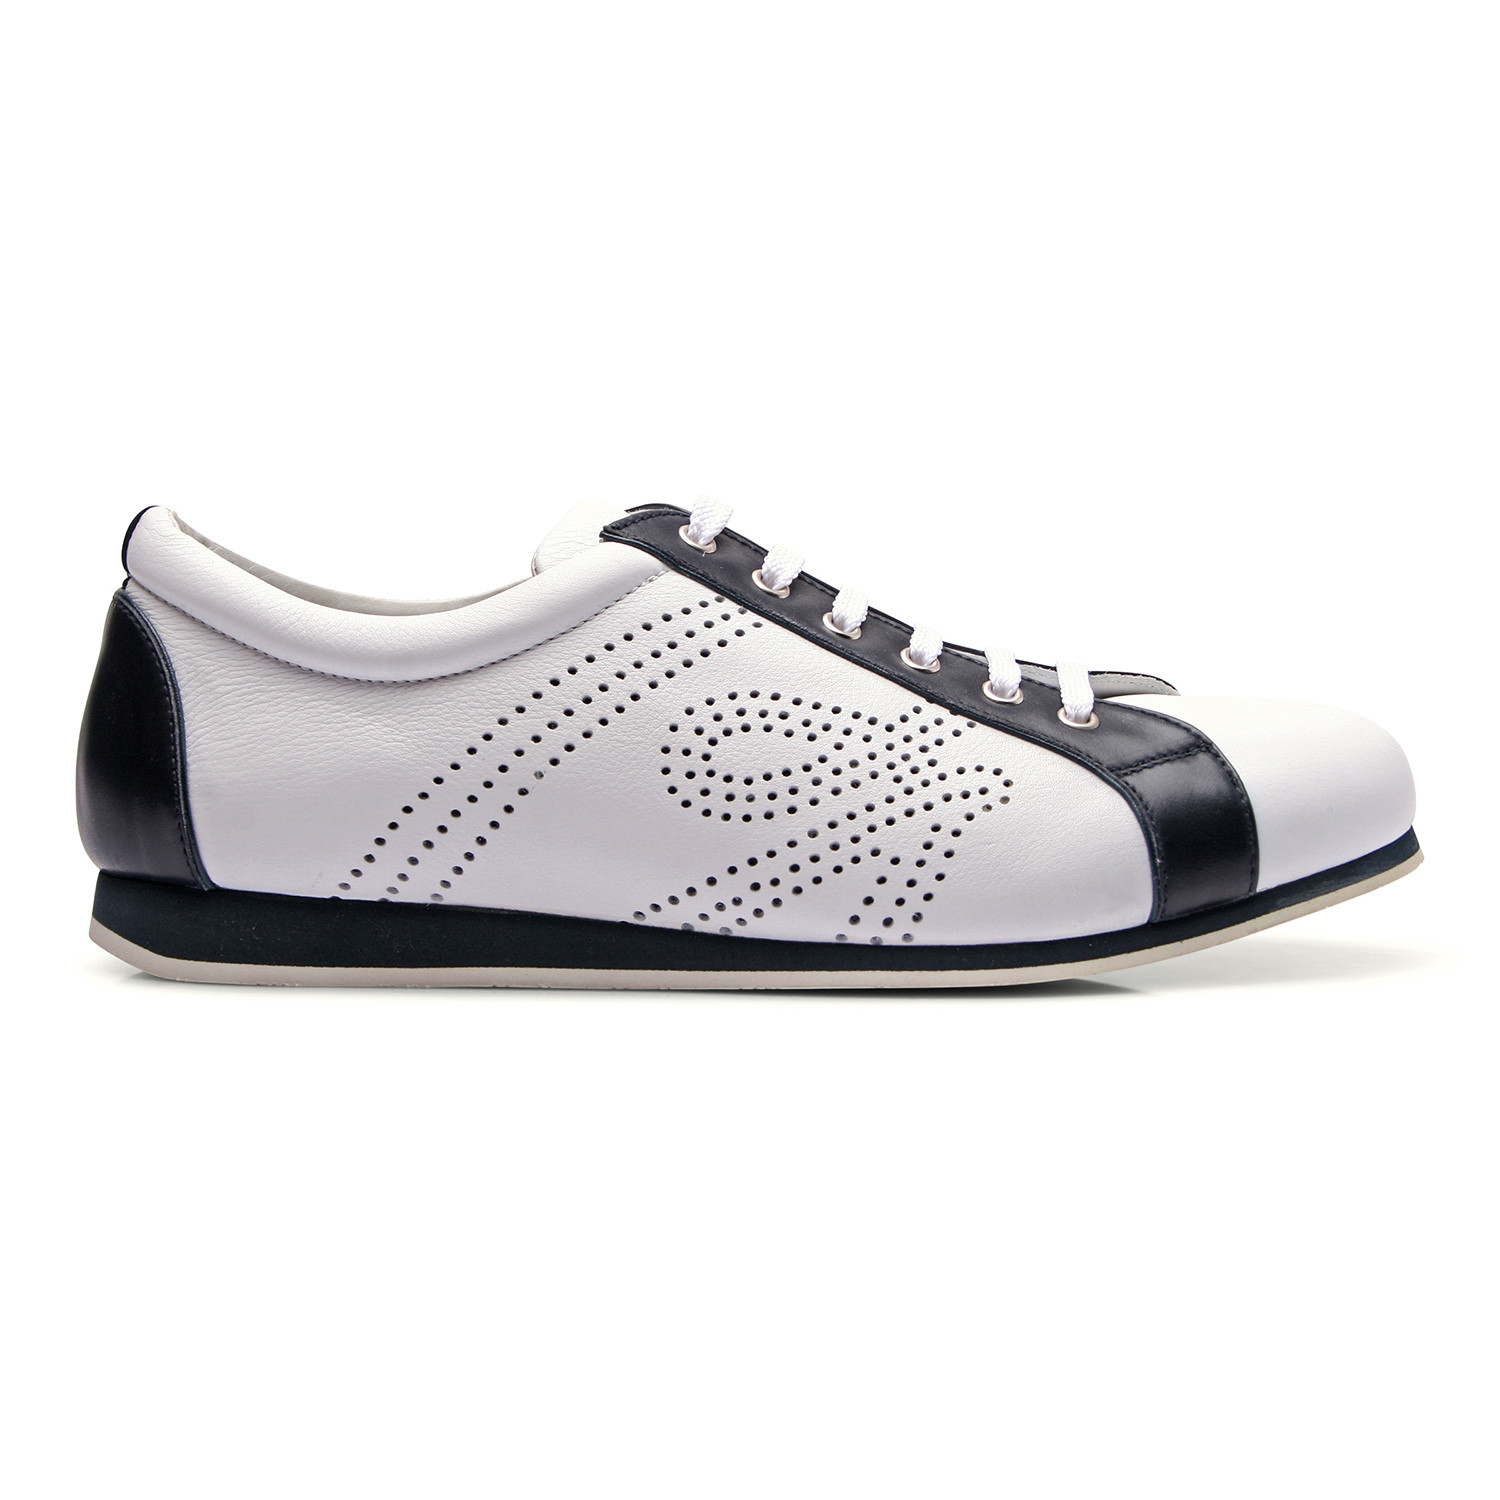 Two Tone Leather Fashion Sneaker // White + Black (Euro: 40) - Brioni ...